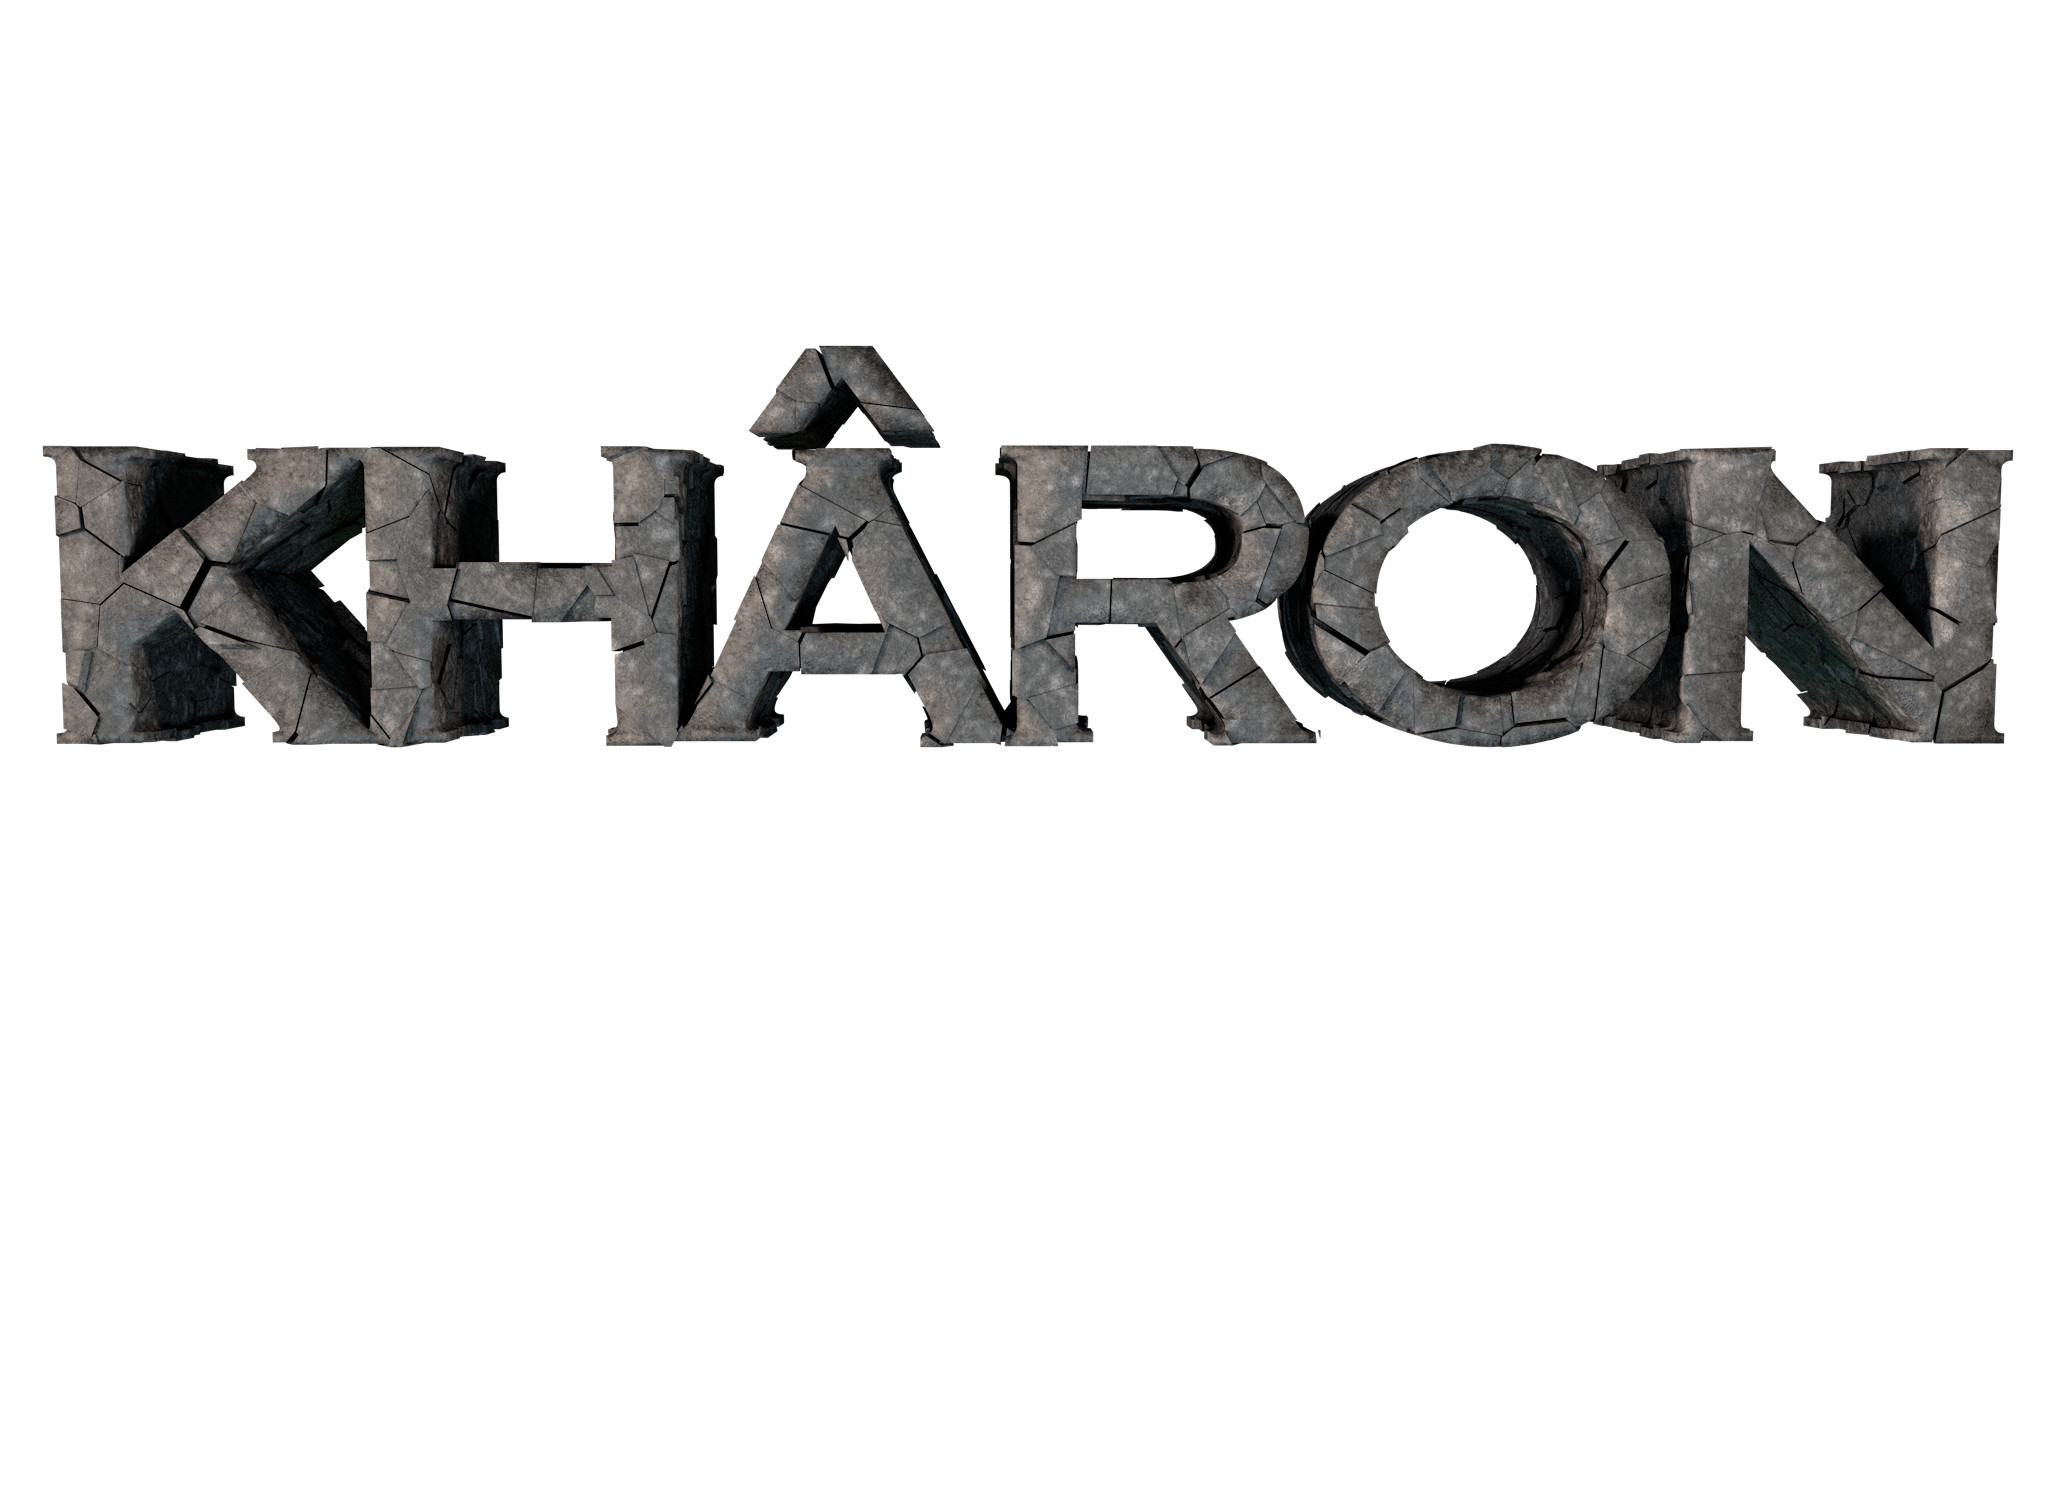 Kharon Isotype. 
by Alberto S.S. Cisneros